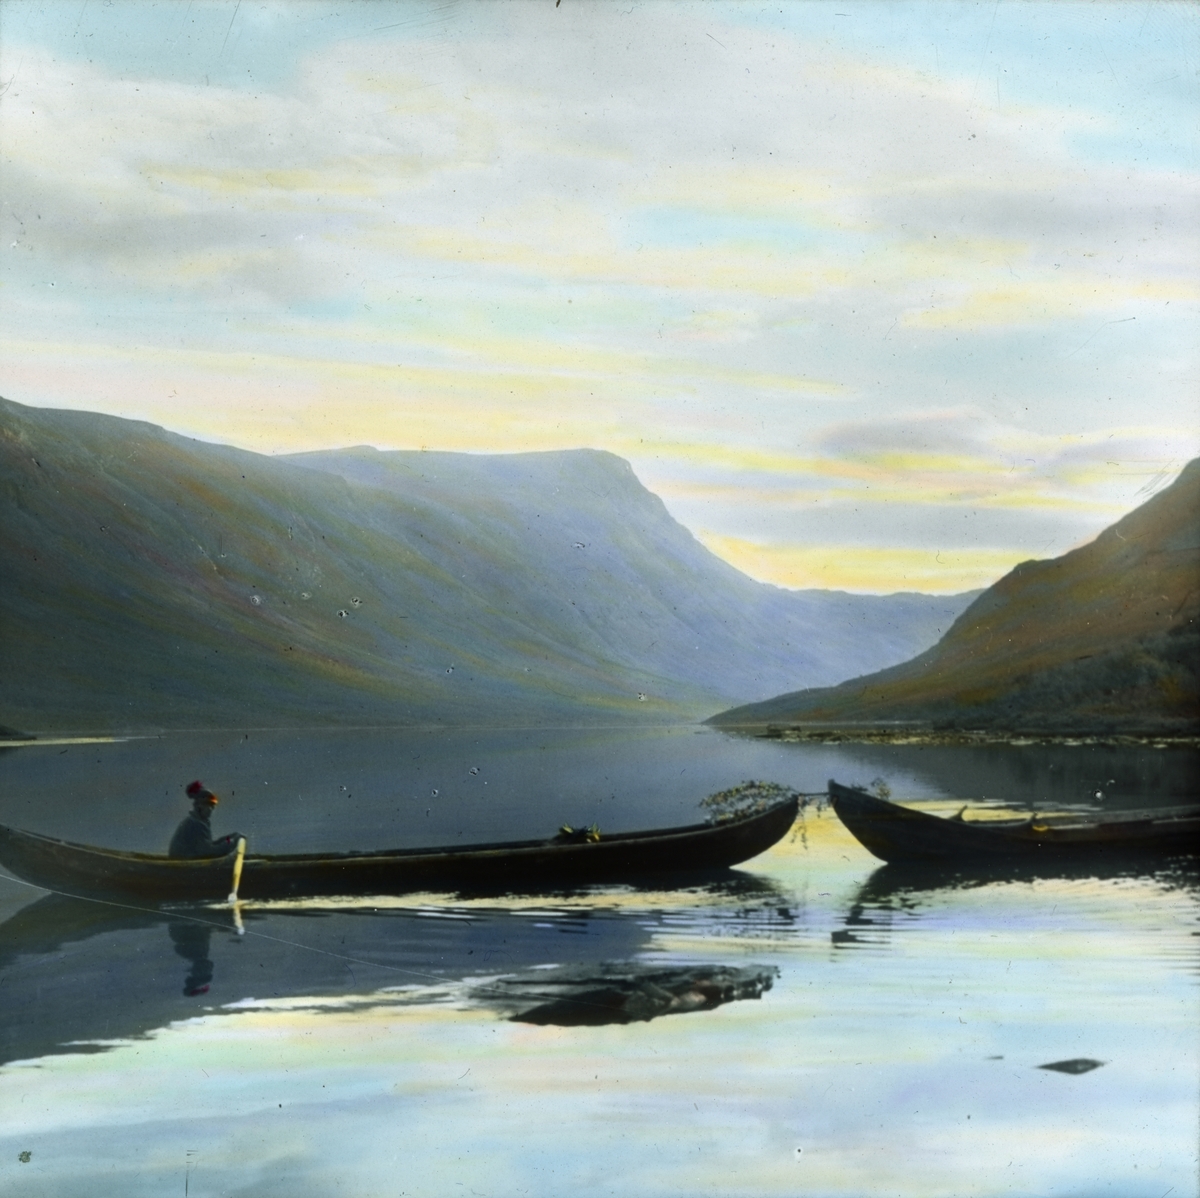 Håndkolorert dias. En mann ror og tauer en annen båt på en innsjø i nasjonalparken Pieljekaise i Sverige.